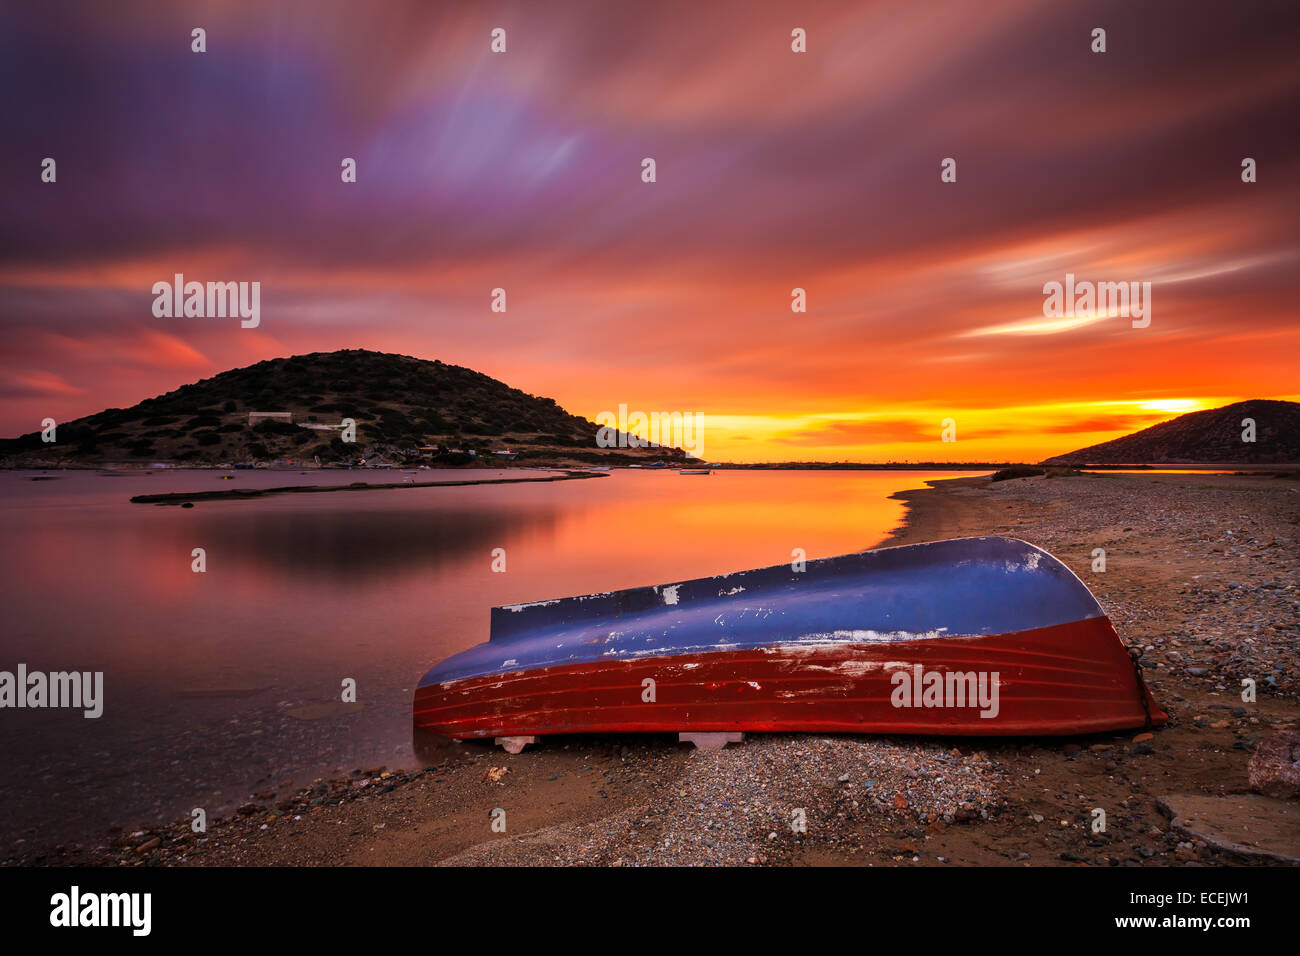 Bateau de pêche solitaire à gauche contre une côte spectaculaire et de soleil colorés avec des nuages de couleur passant sur le bateau Banque D'Images